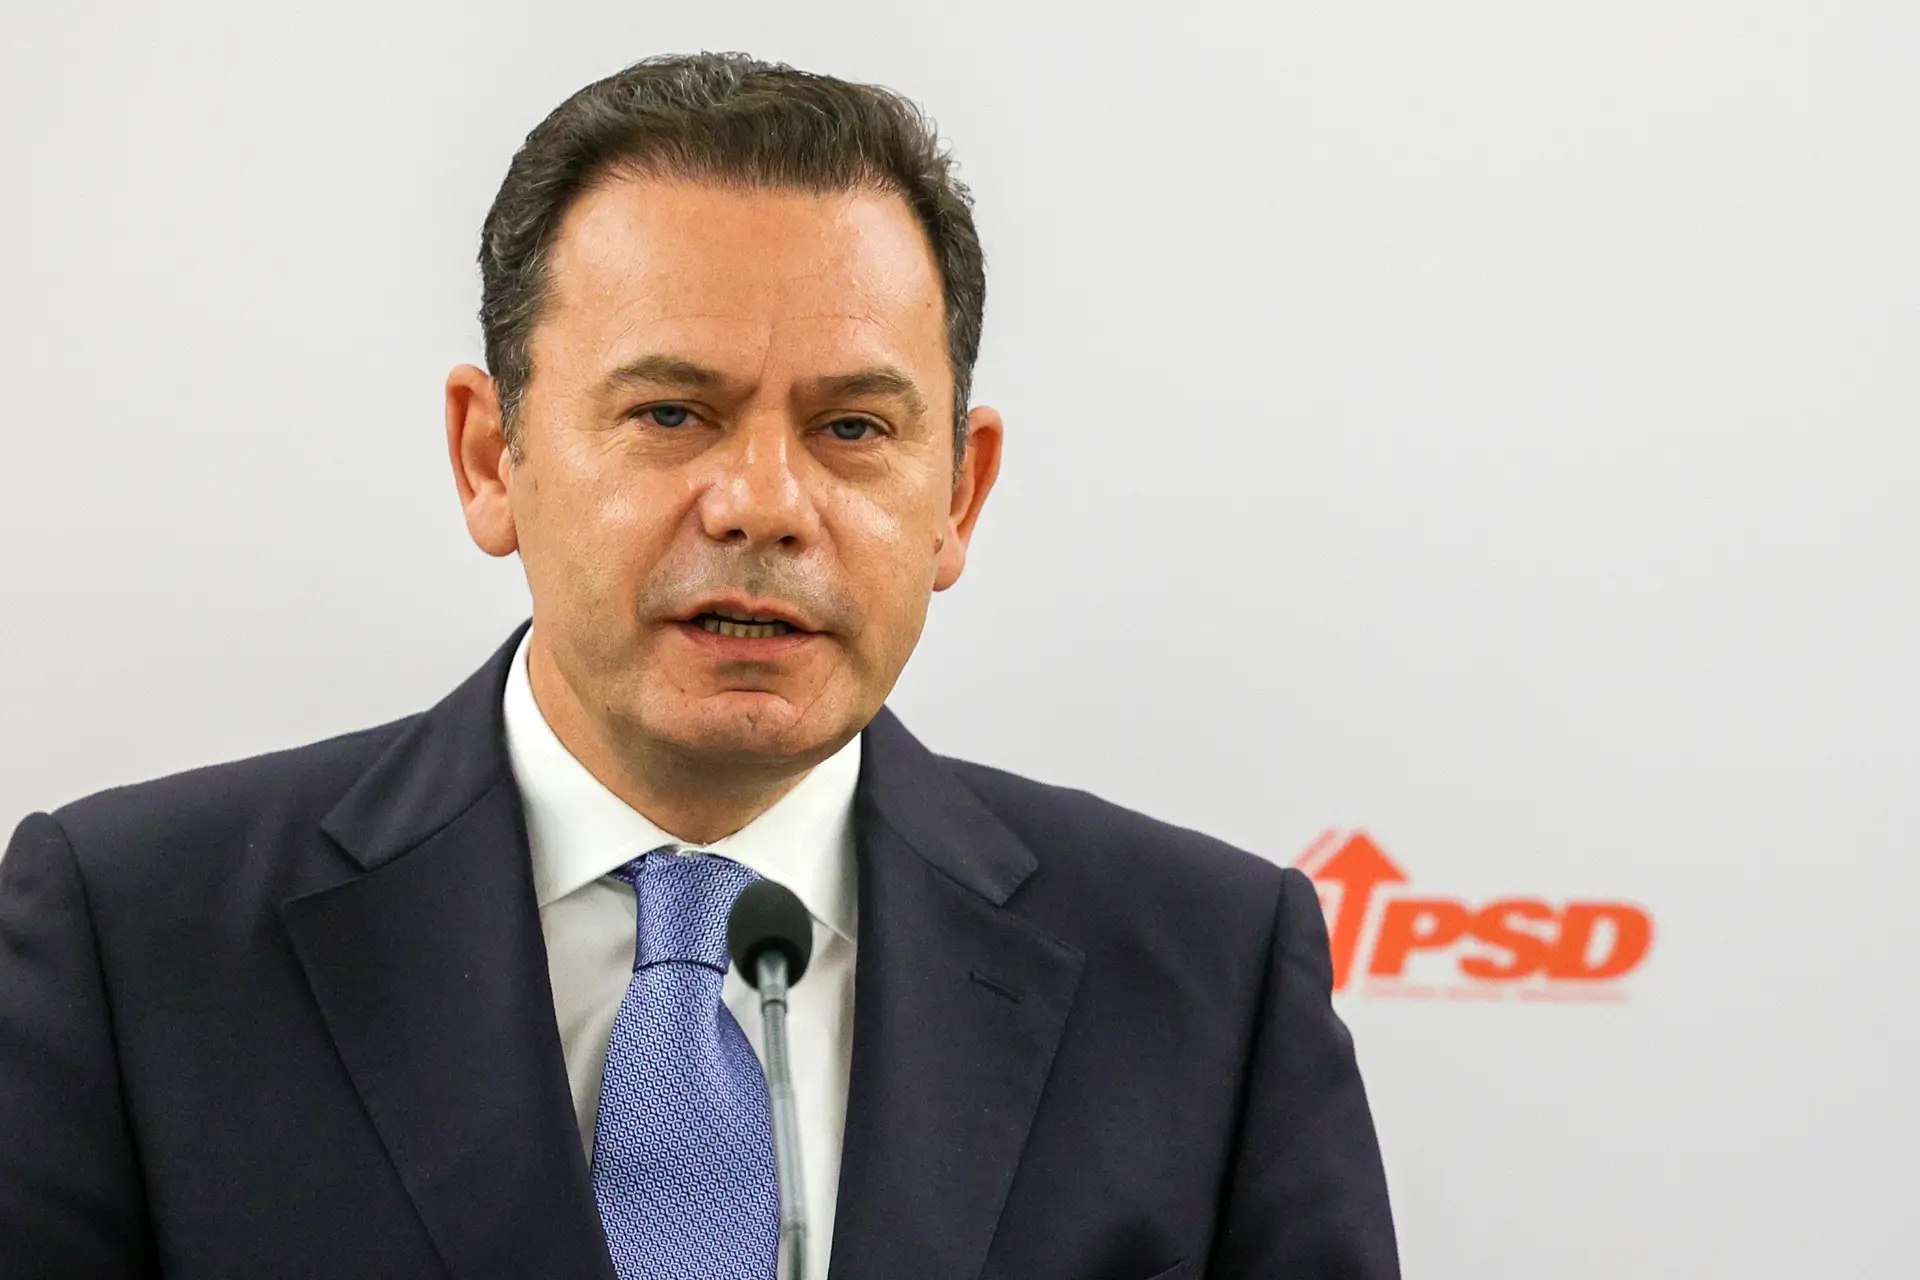 Lider do PSD obteve isenção de IMI durante três anos na sua moradia em Espinho avaliada em 1,5 milhões de euros